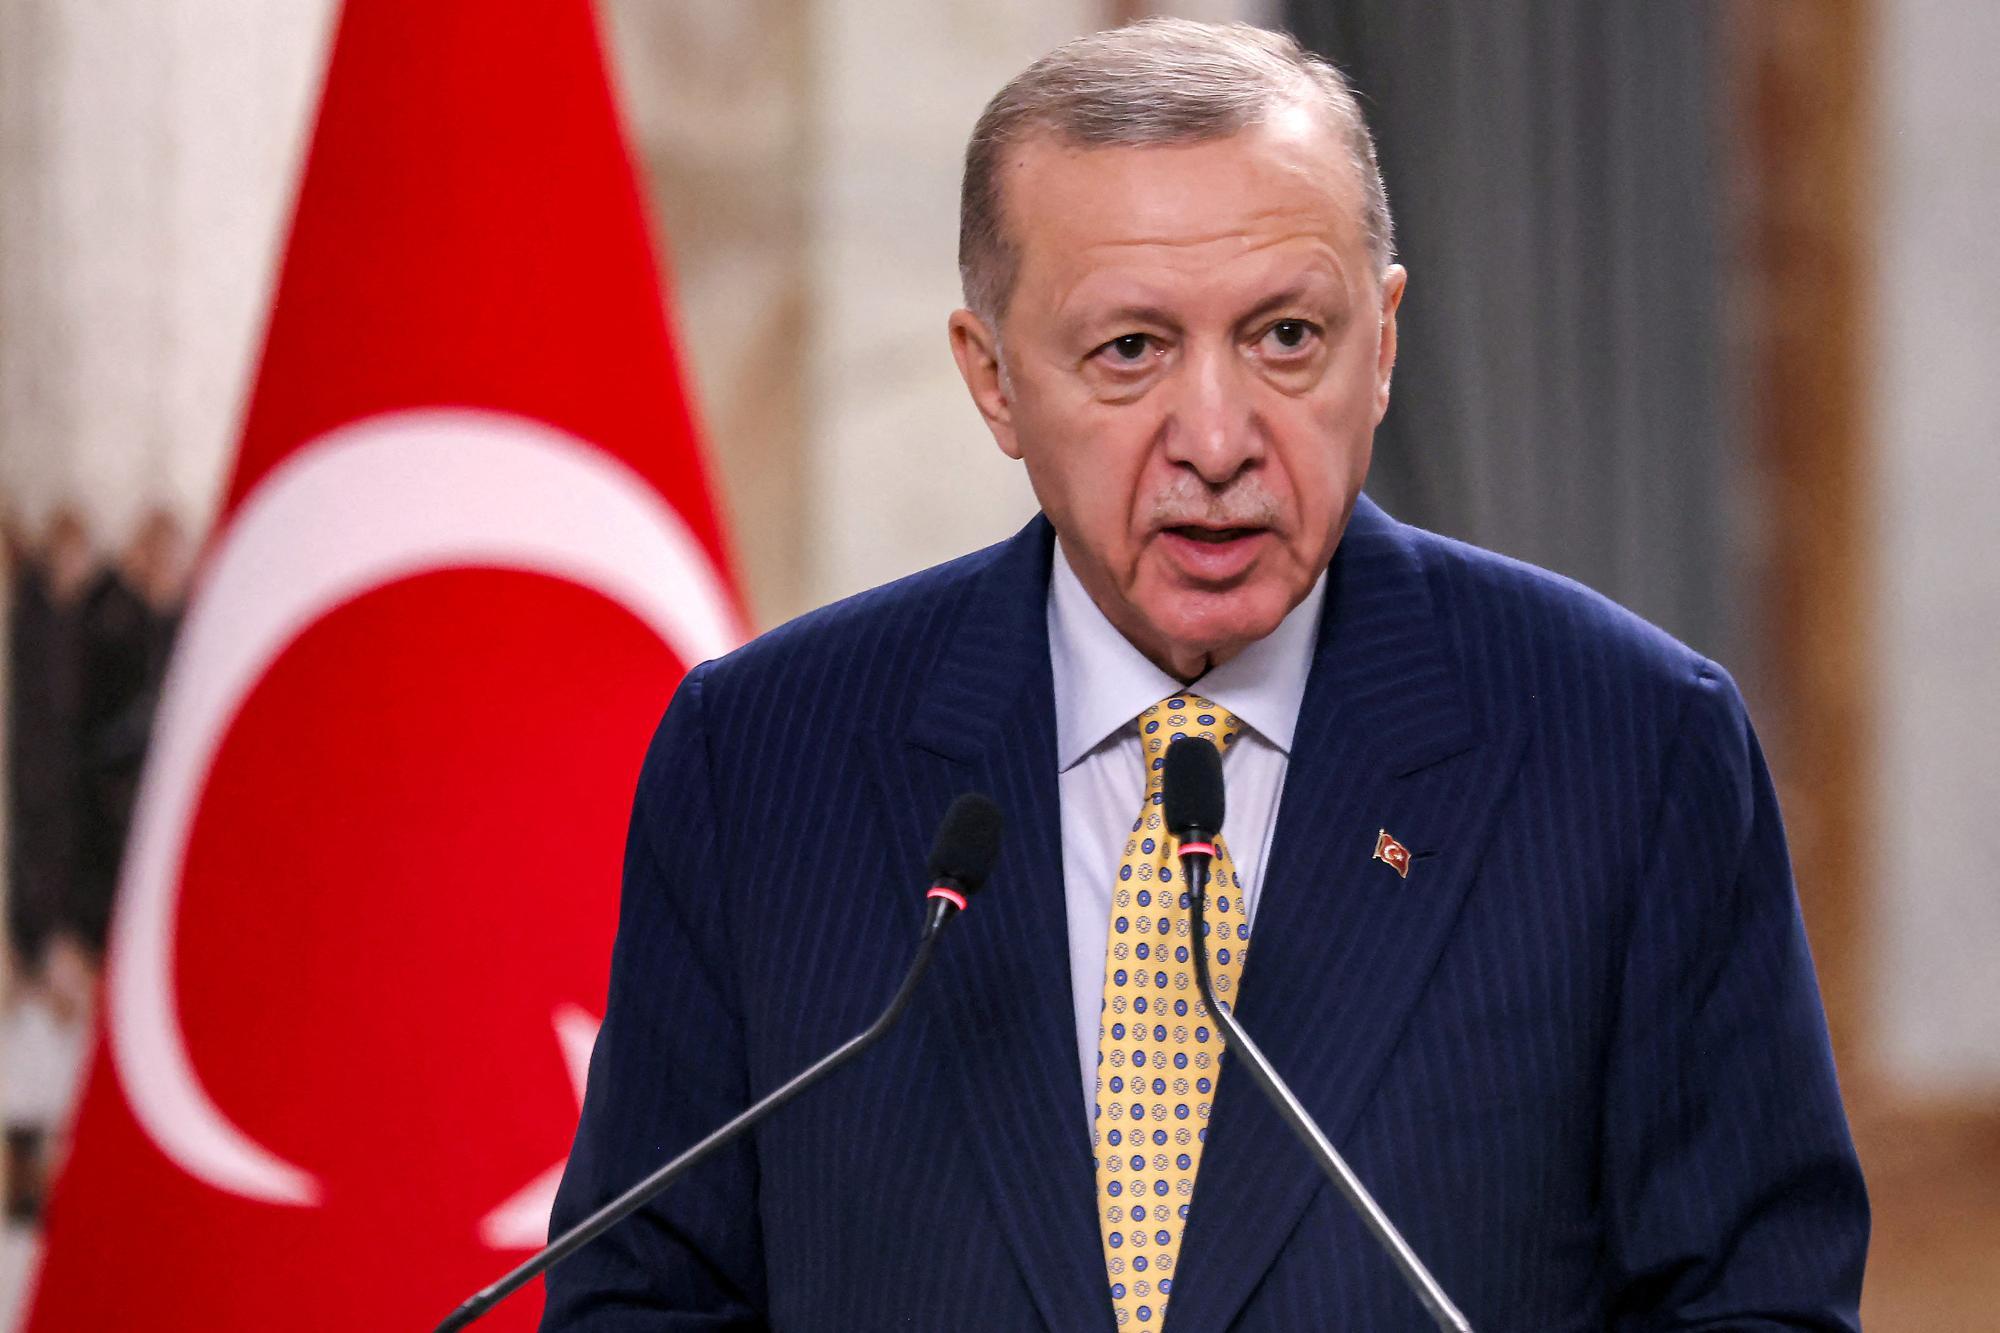 Türkei stellt Handel mit Israel ein: Außenminister spricht von "Vertragsbruch"